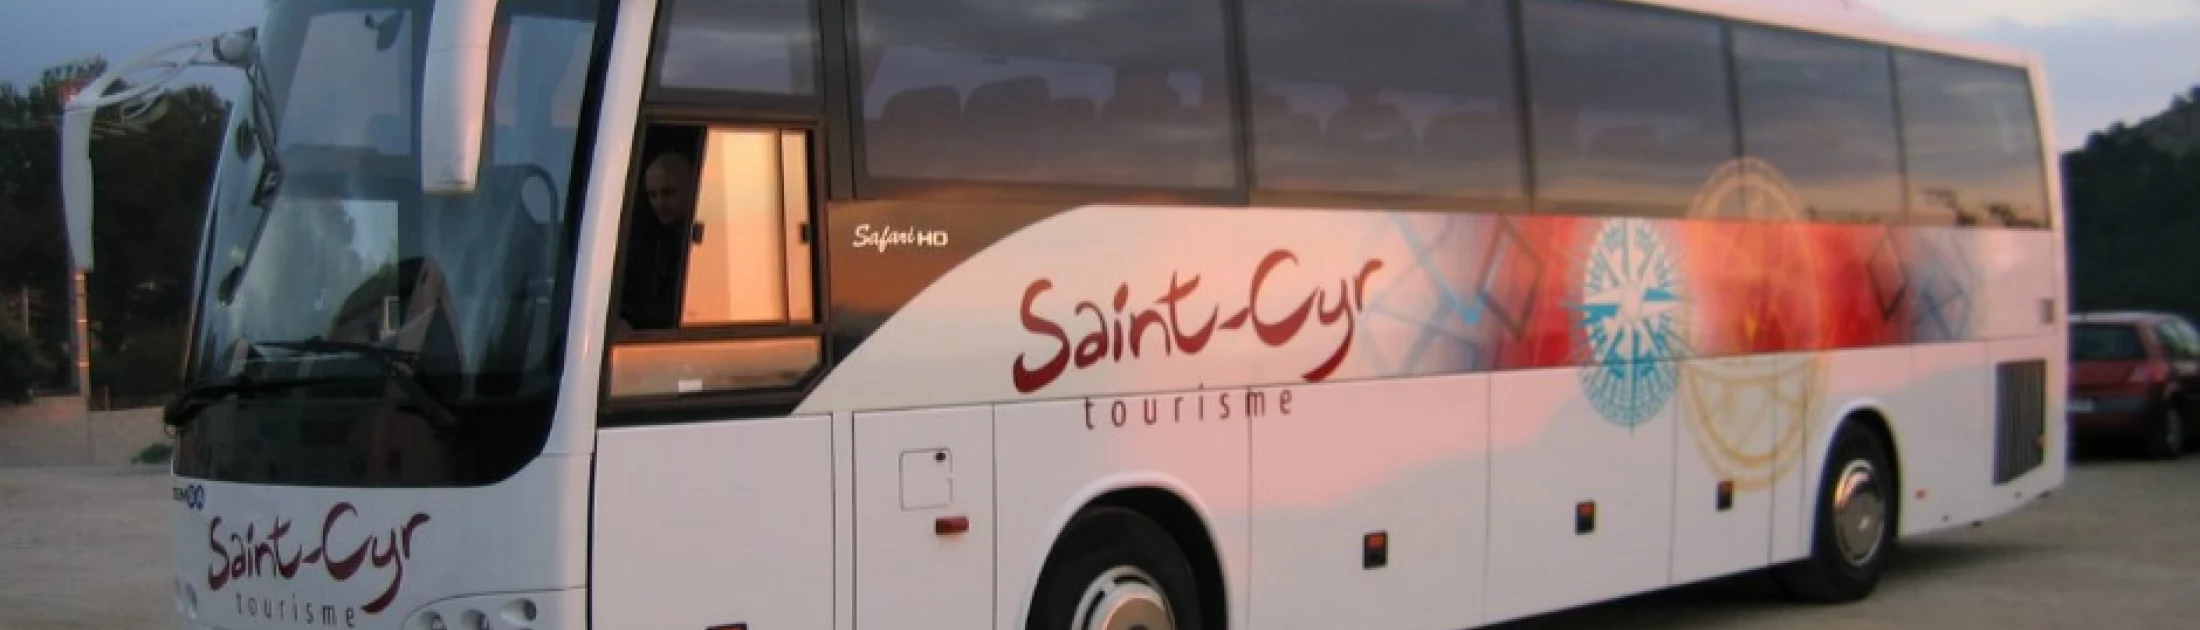 Arc-en-ciel Voyages / St Cyr Tourisme : Une entreprise familiale dédiée aux voyages